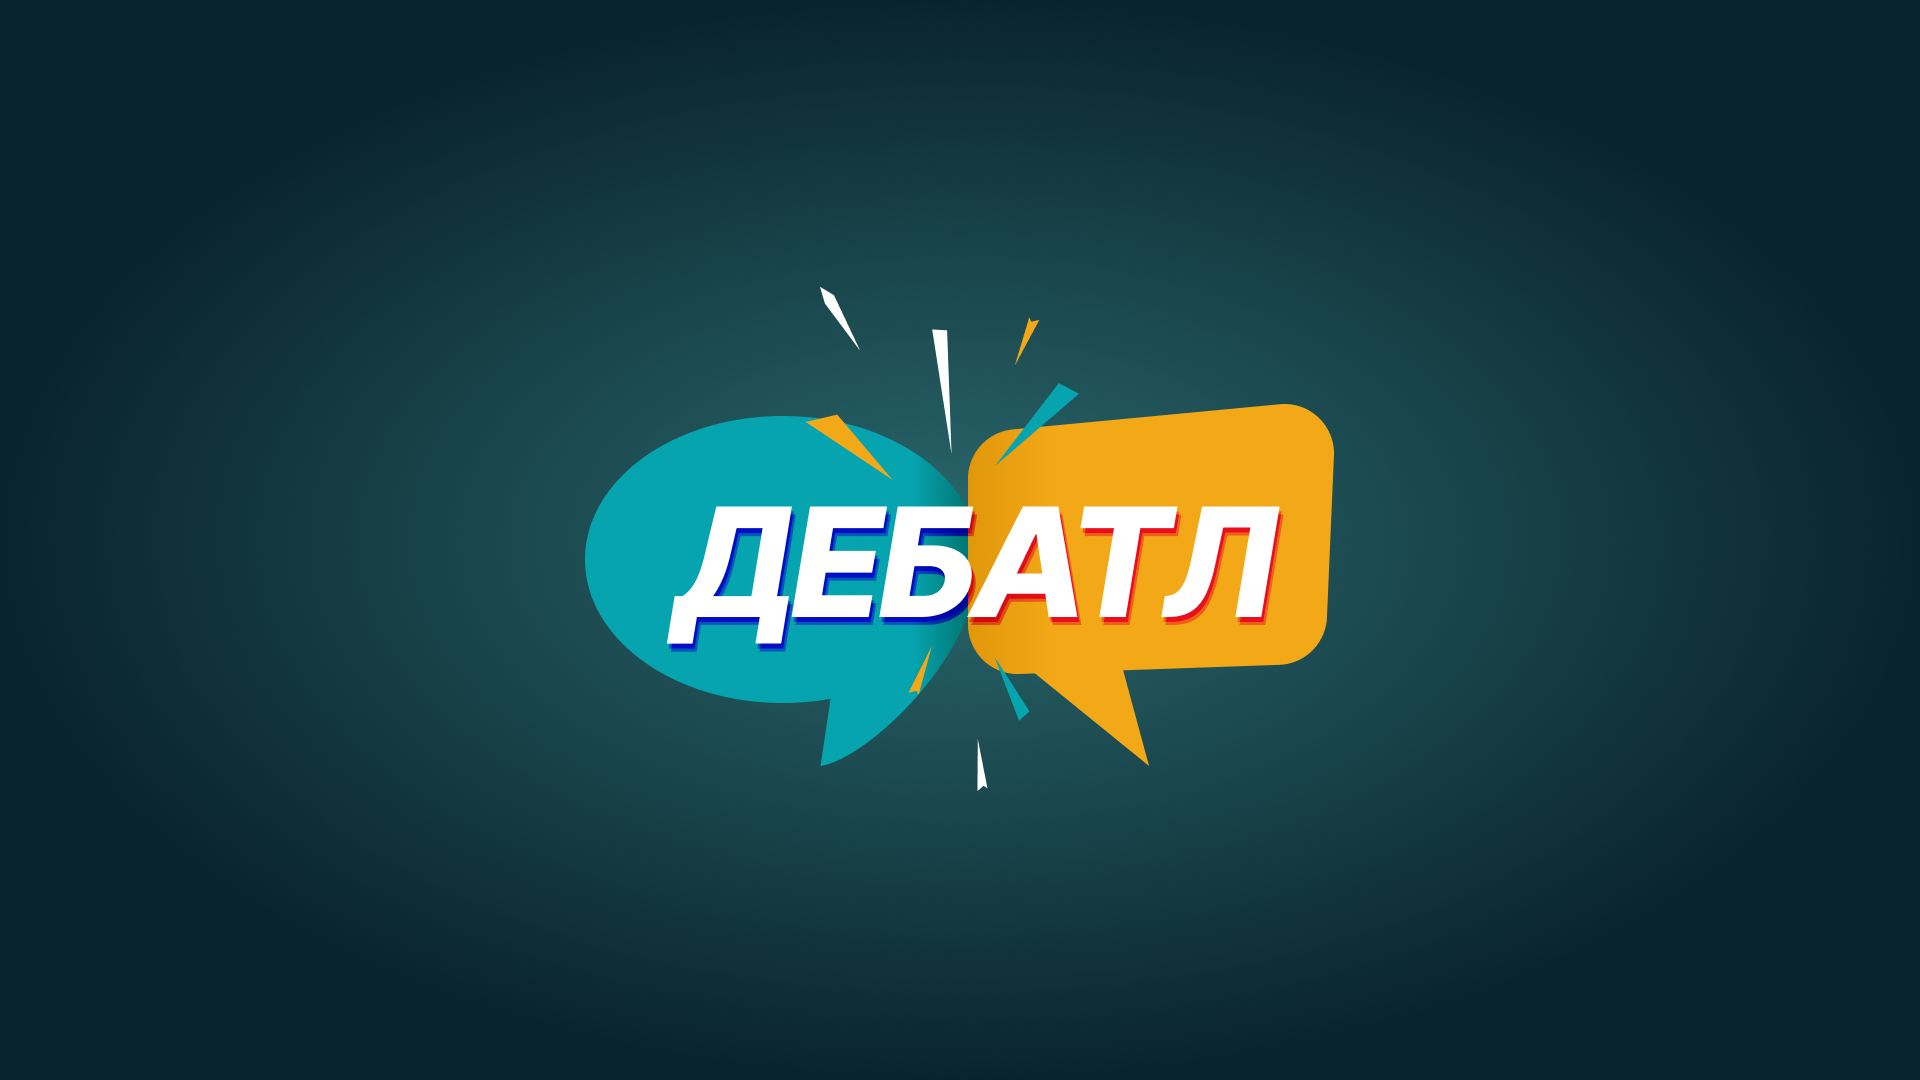 Омск и Уфа сразятся за звание чемпиона диспутного клуба «Дебатл»